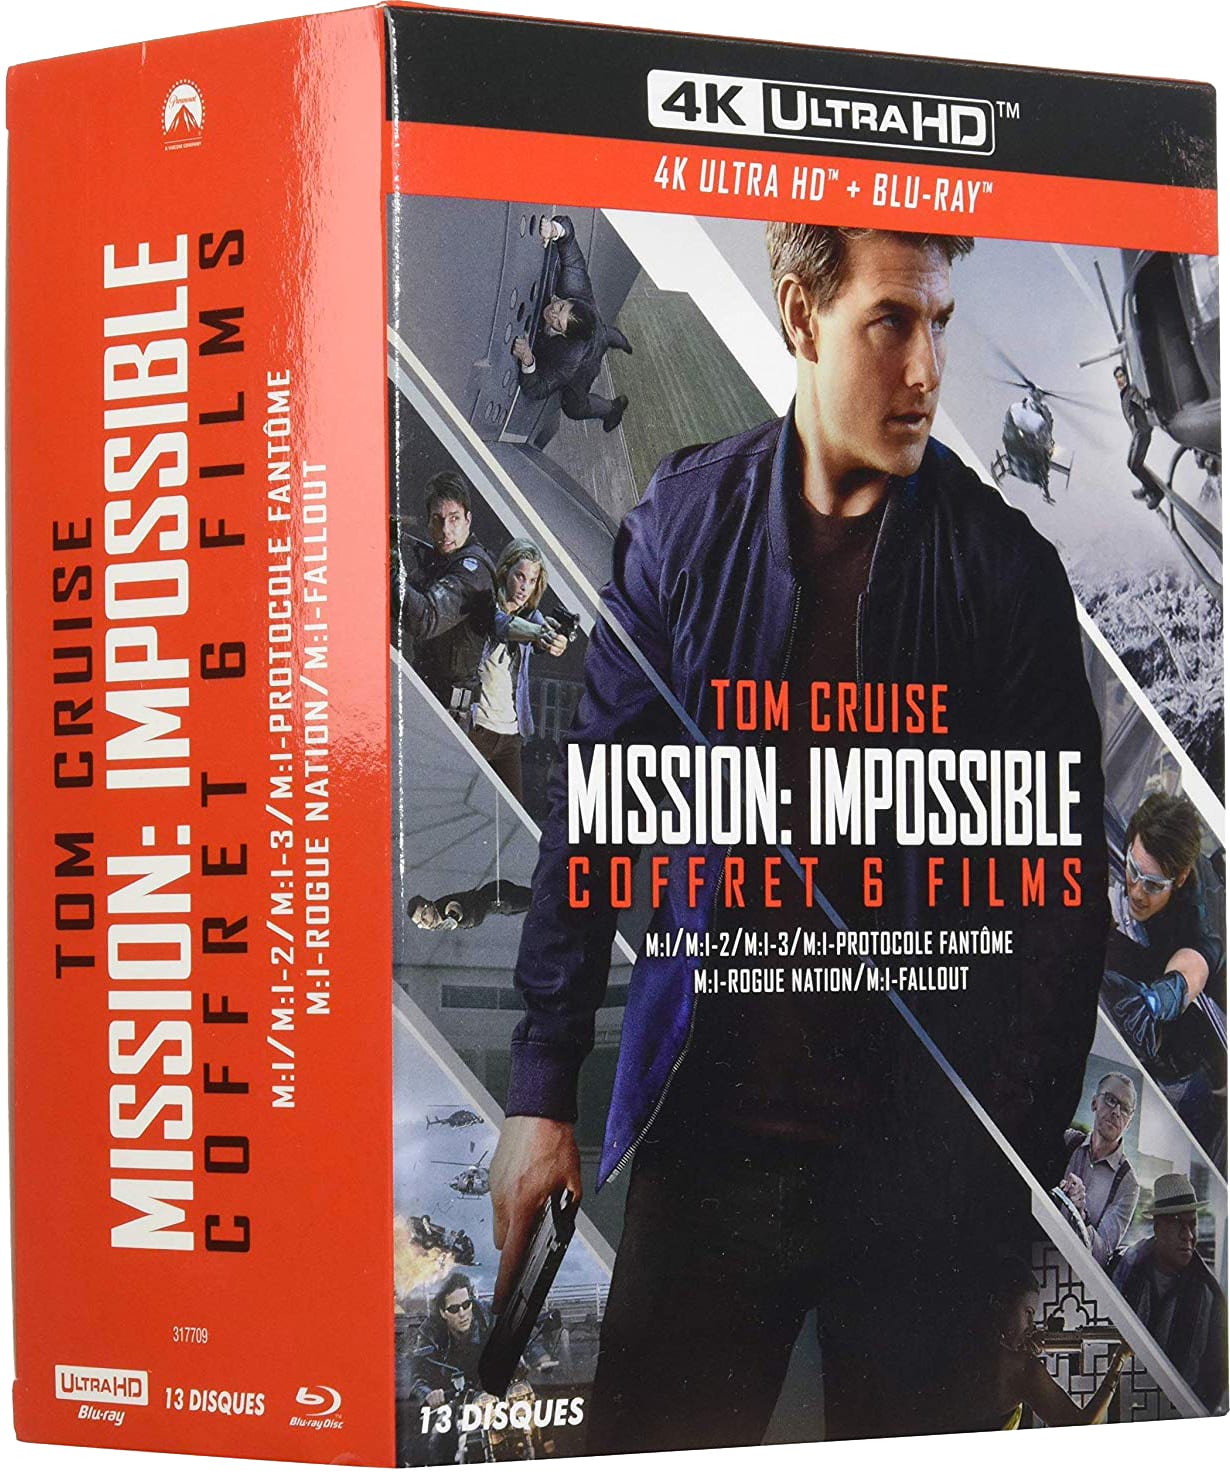 Intégrale série mission impossible Blu-ray DVD version restaurée